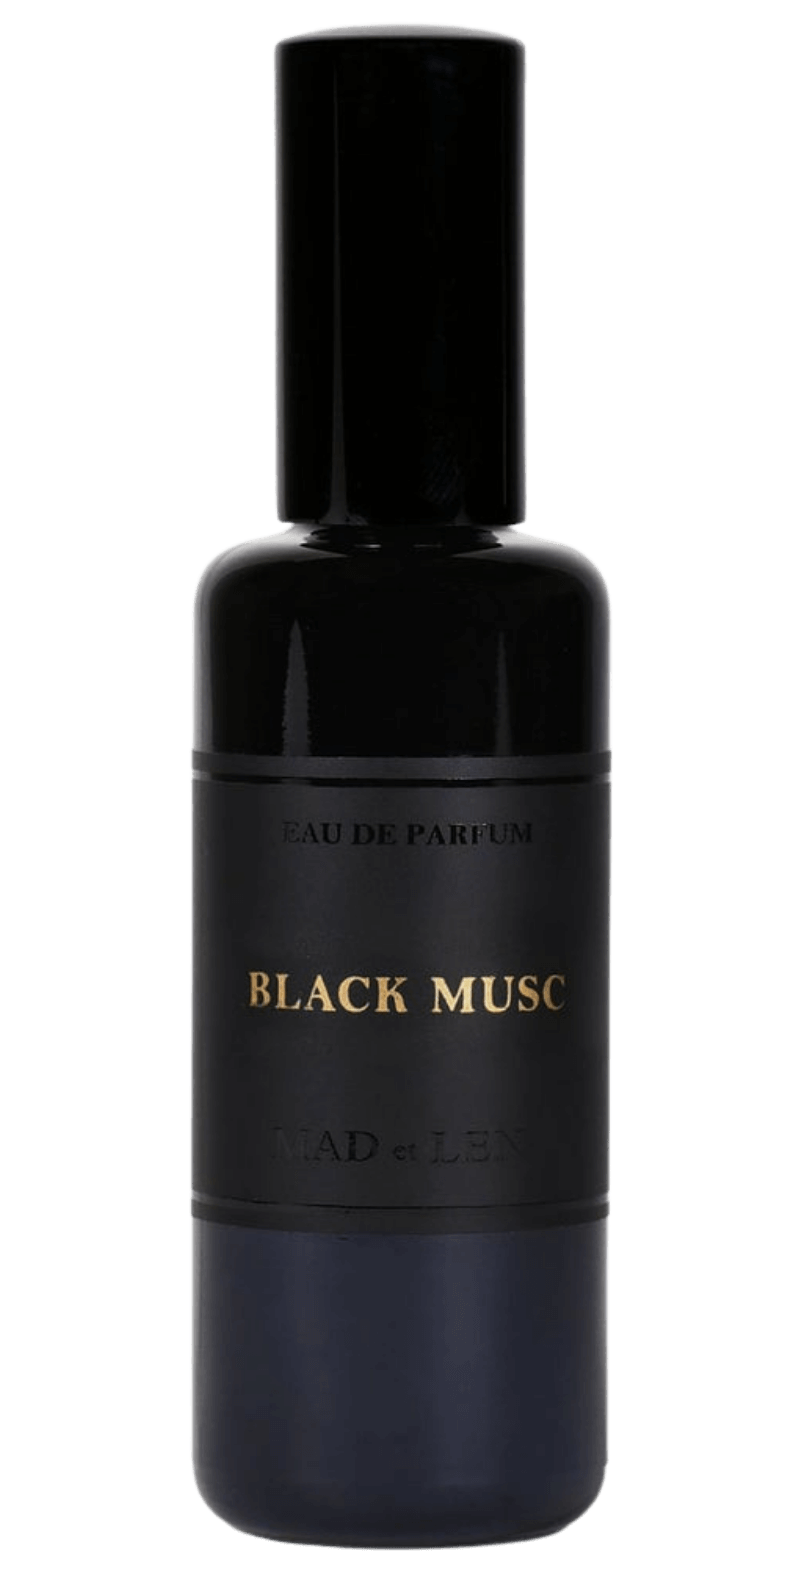 &#39;s Mad et Len Black Musk Eau de Parfum - Bellini&#39;s Skin and Parfumerie 